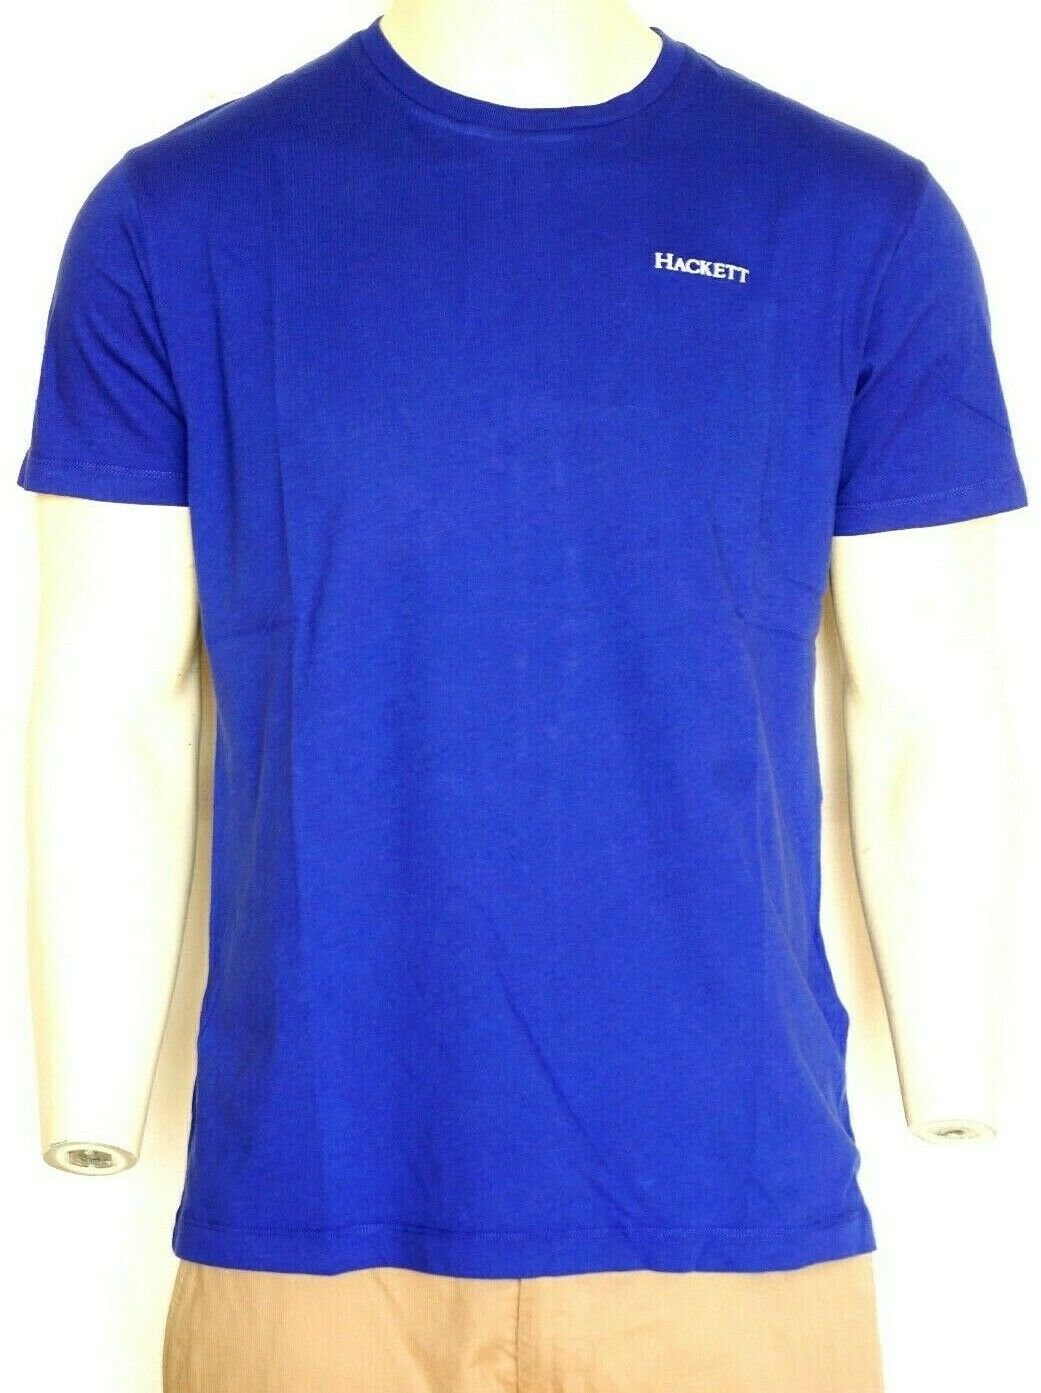 T-Shirt Hackett Herren T-Shirt, Blau World Cup France Hackett T-shirts Herren.